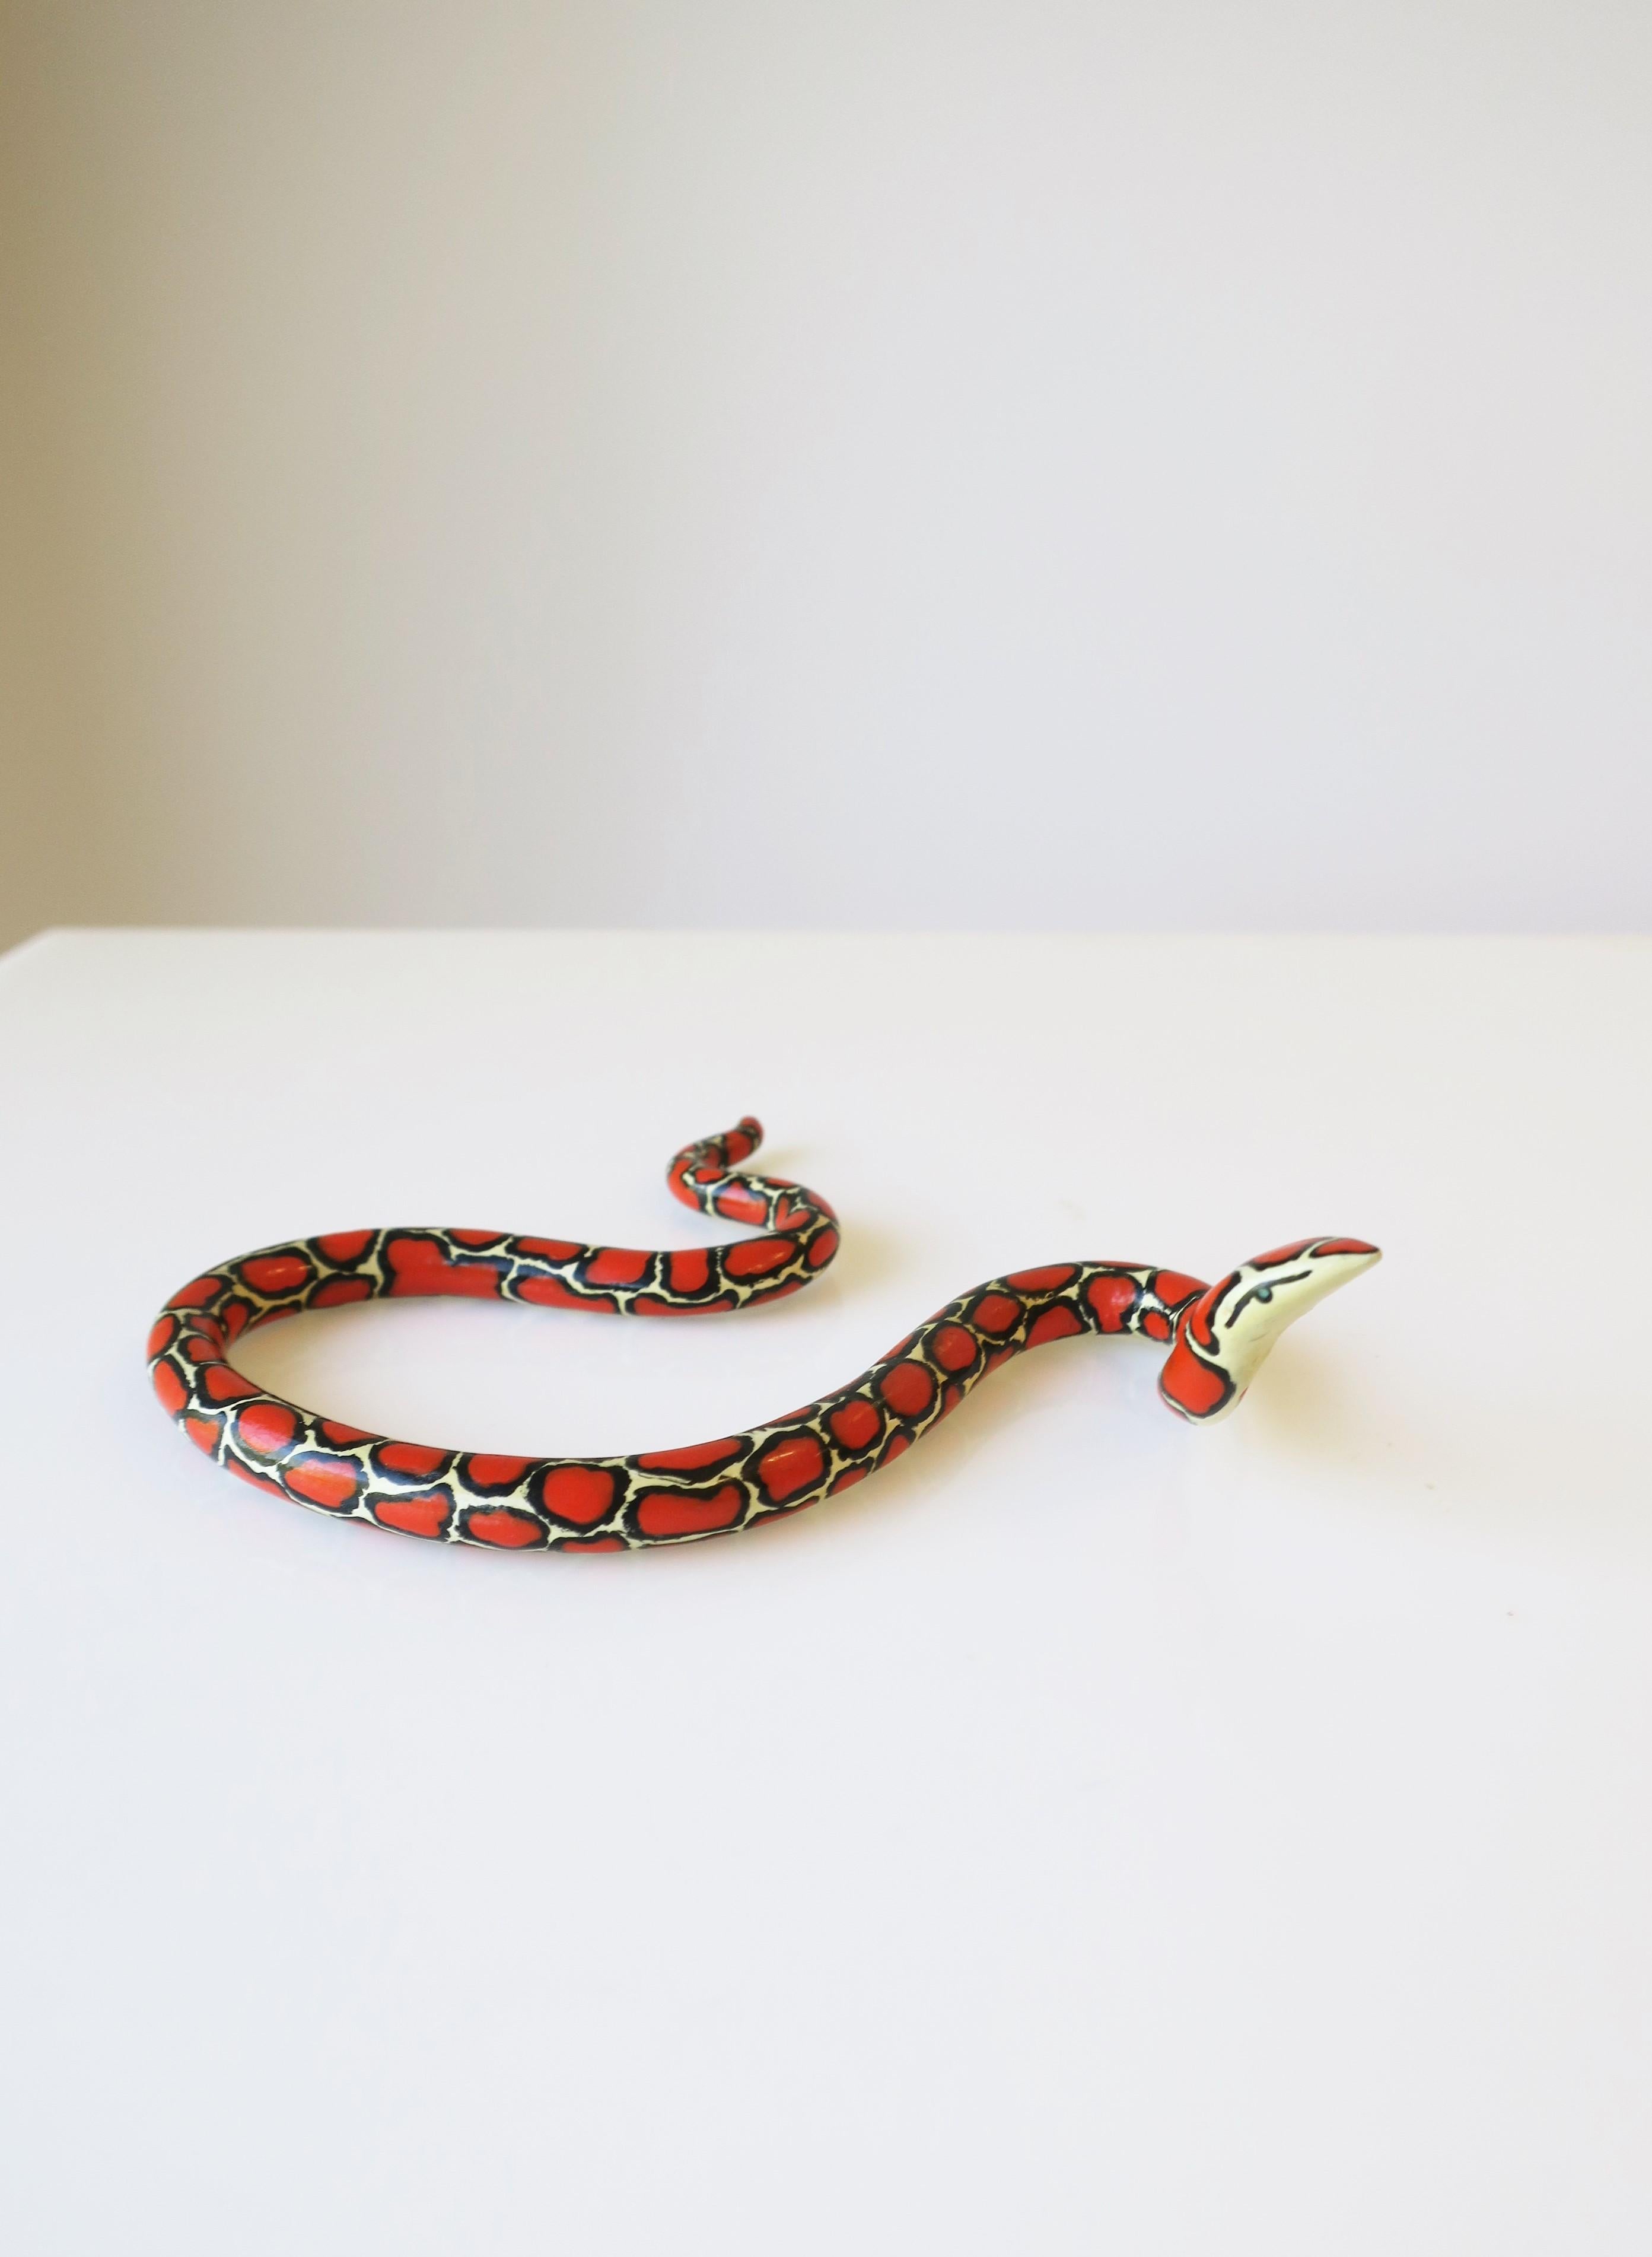 Red Black and White Terracotta Ceramic Snake 6